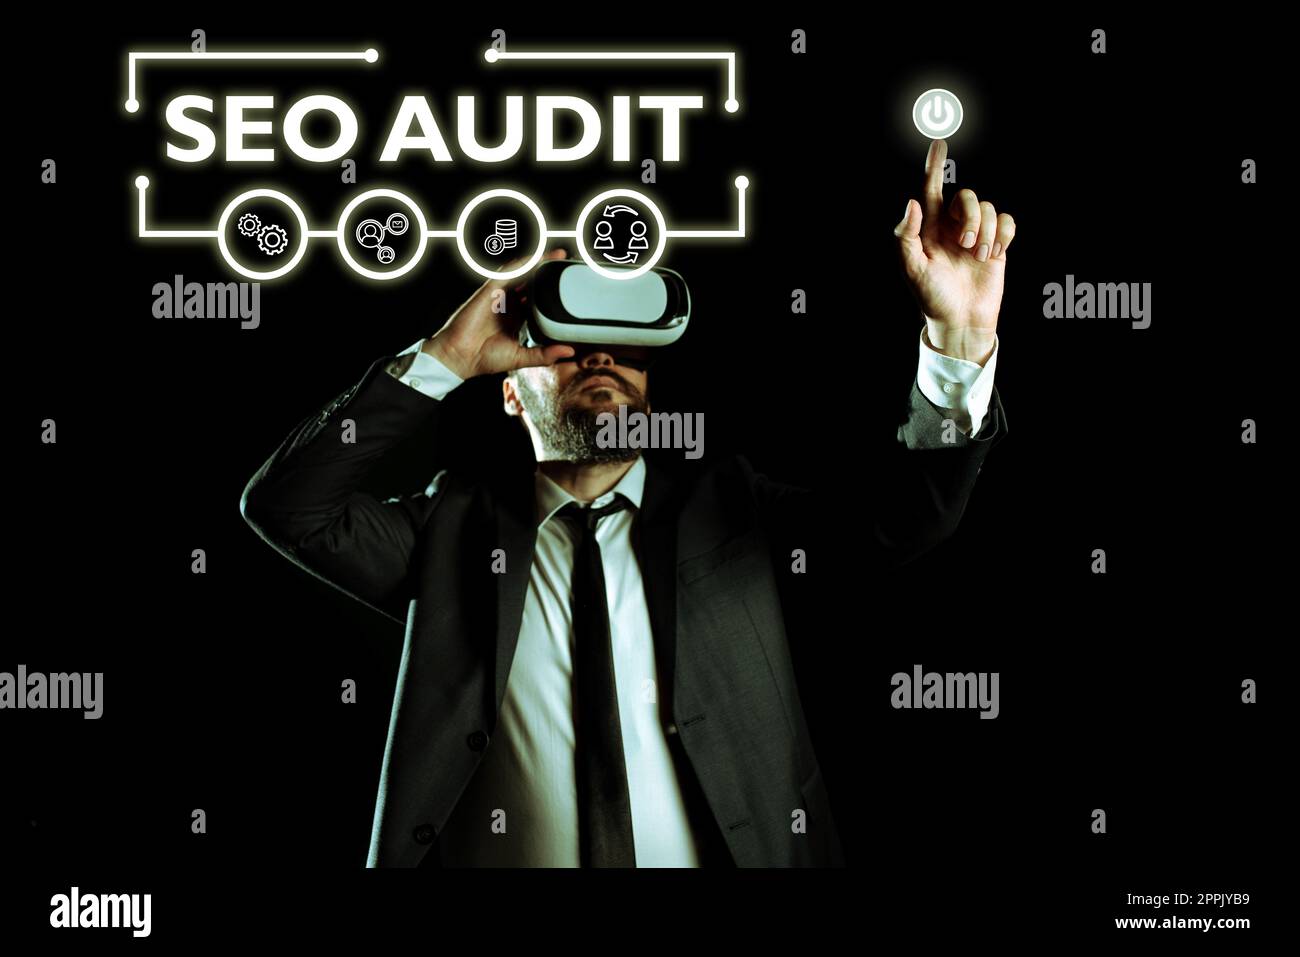 Affiche textuelle indiquant l'audit Seo. Approche métier optimisation du moteur de recherche validation et vérification du processus Banque D'Images